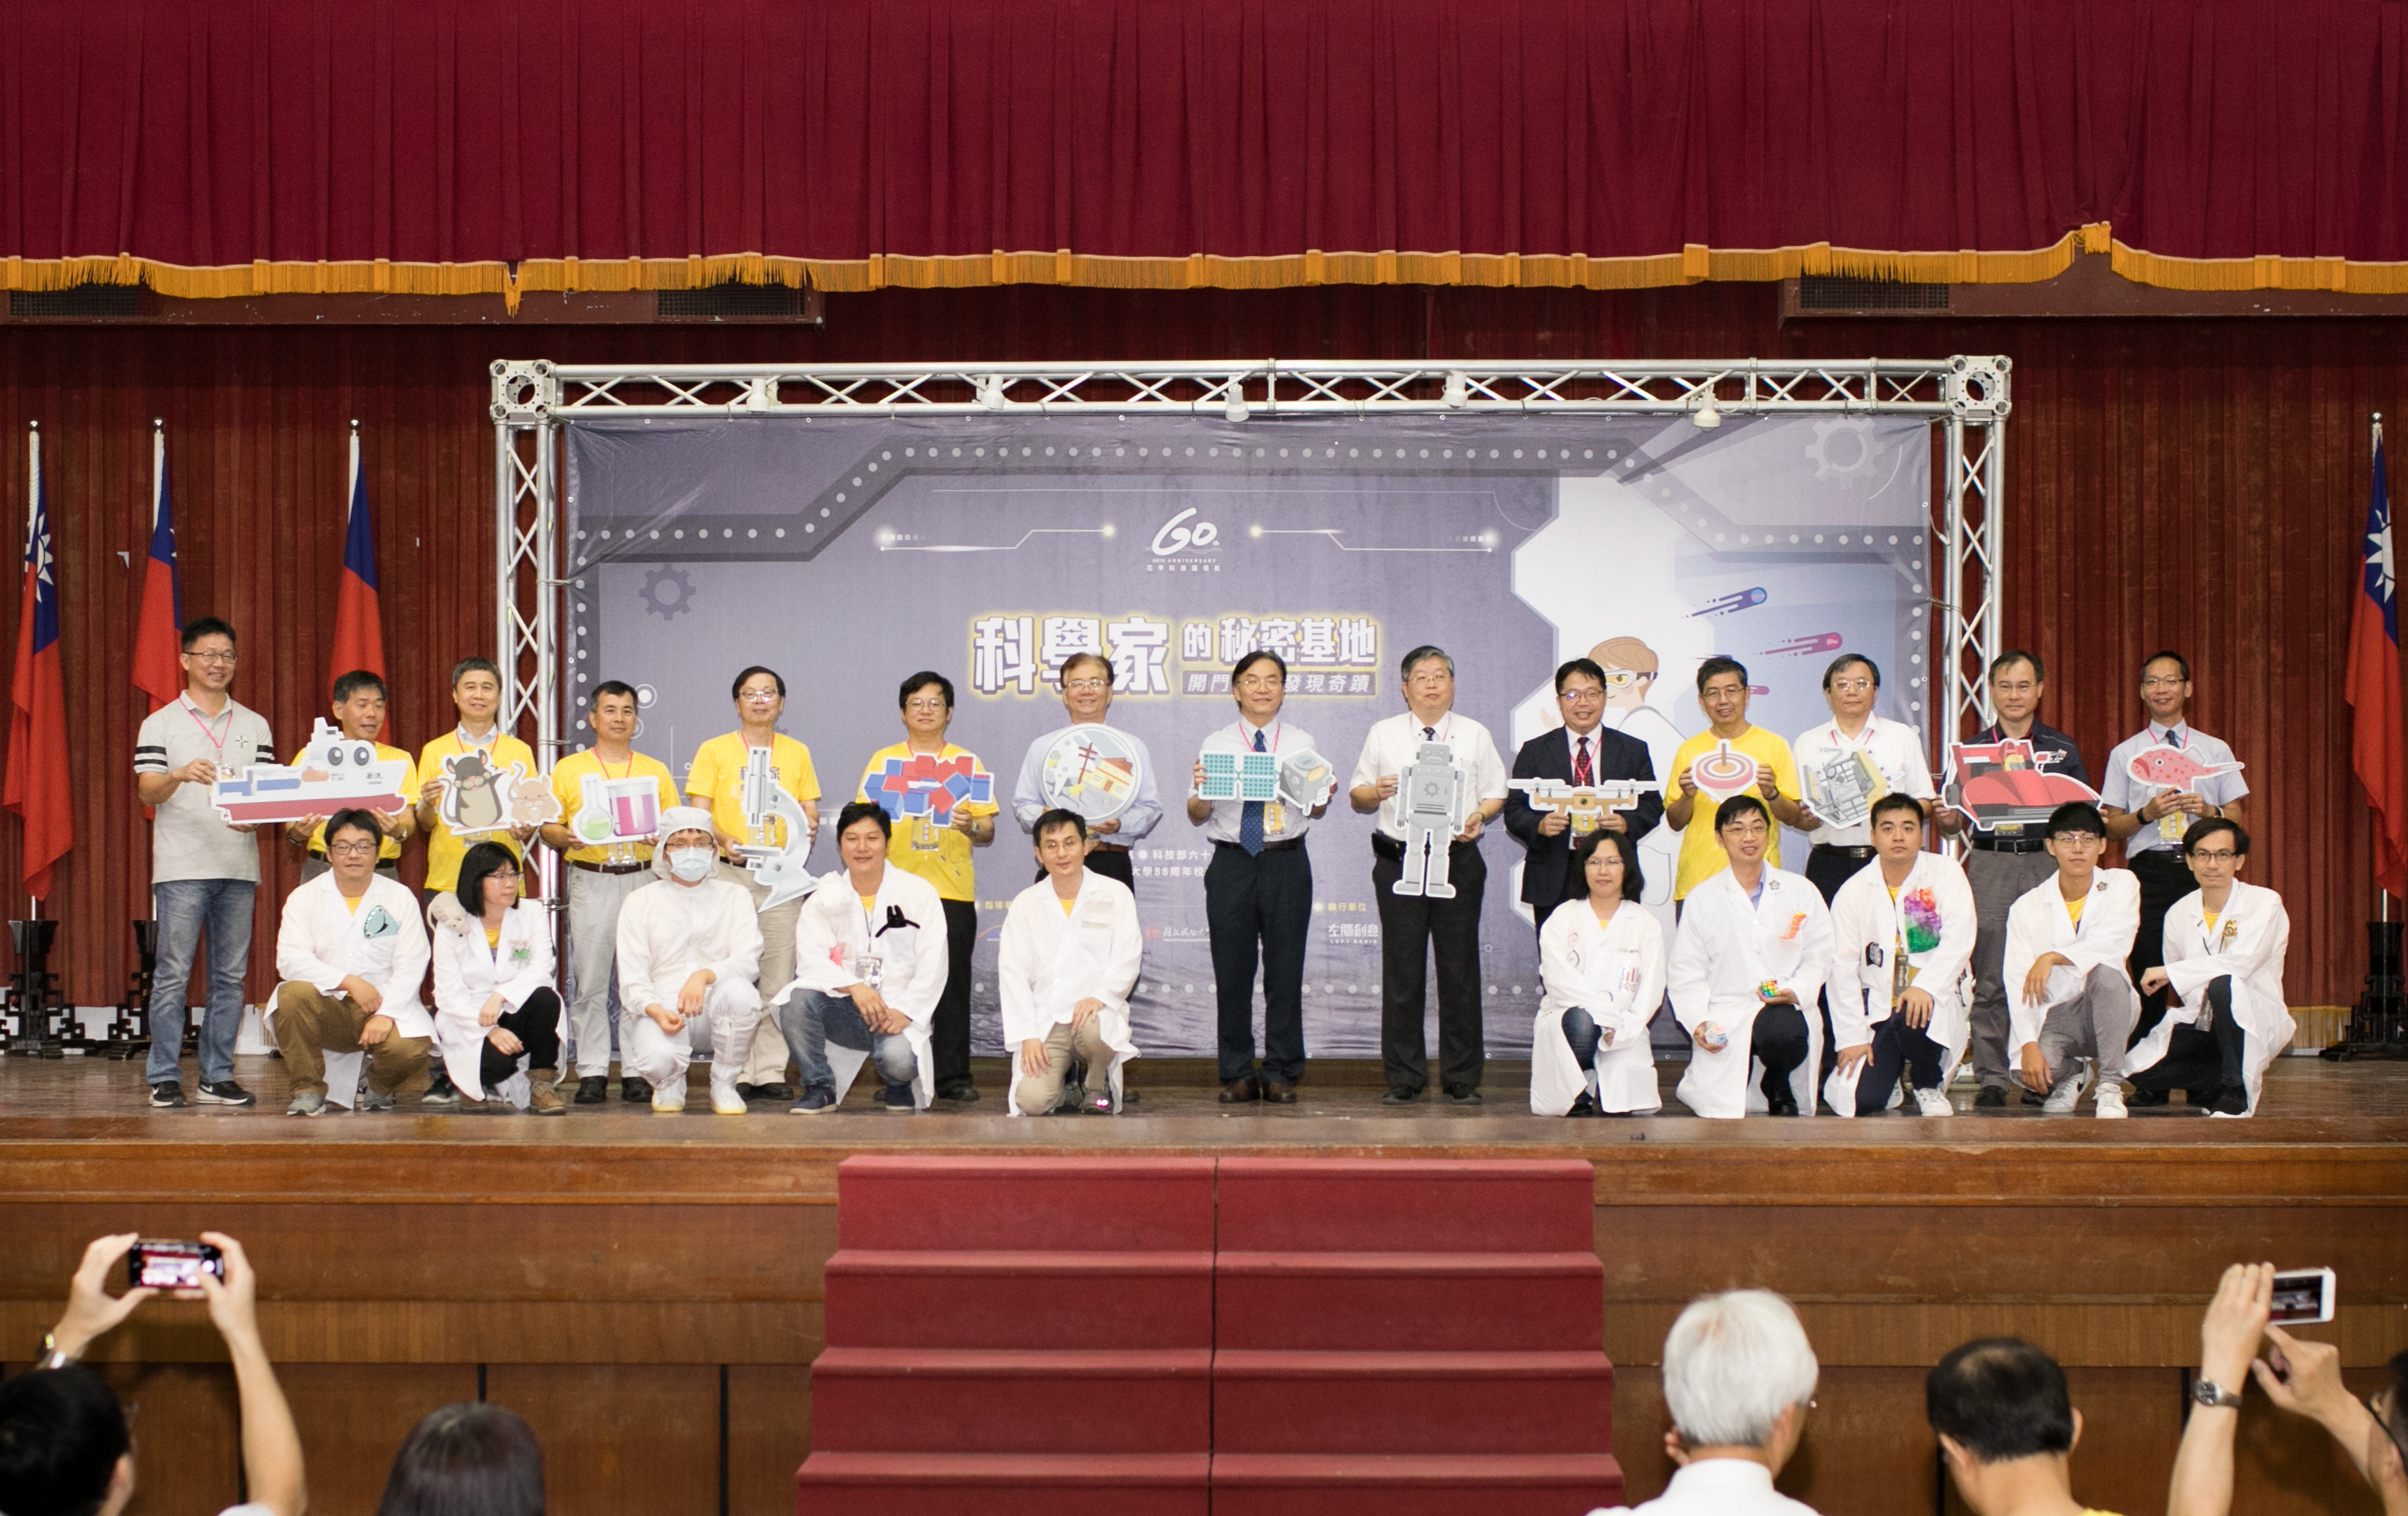 主辦單位國研院與成功大學邀台南市教育局與國中小學共襄盛舉慶祝開展